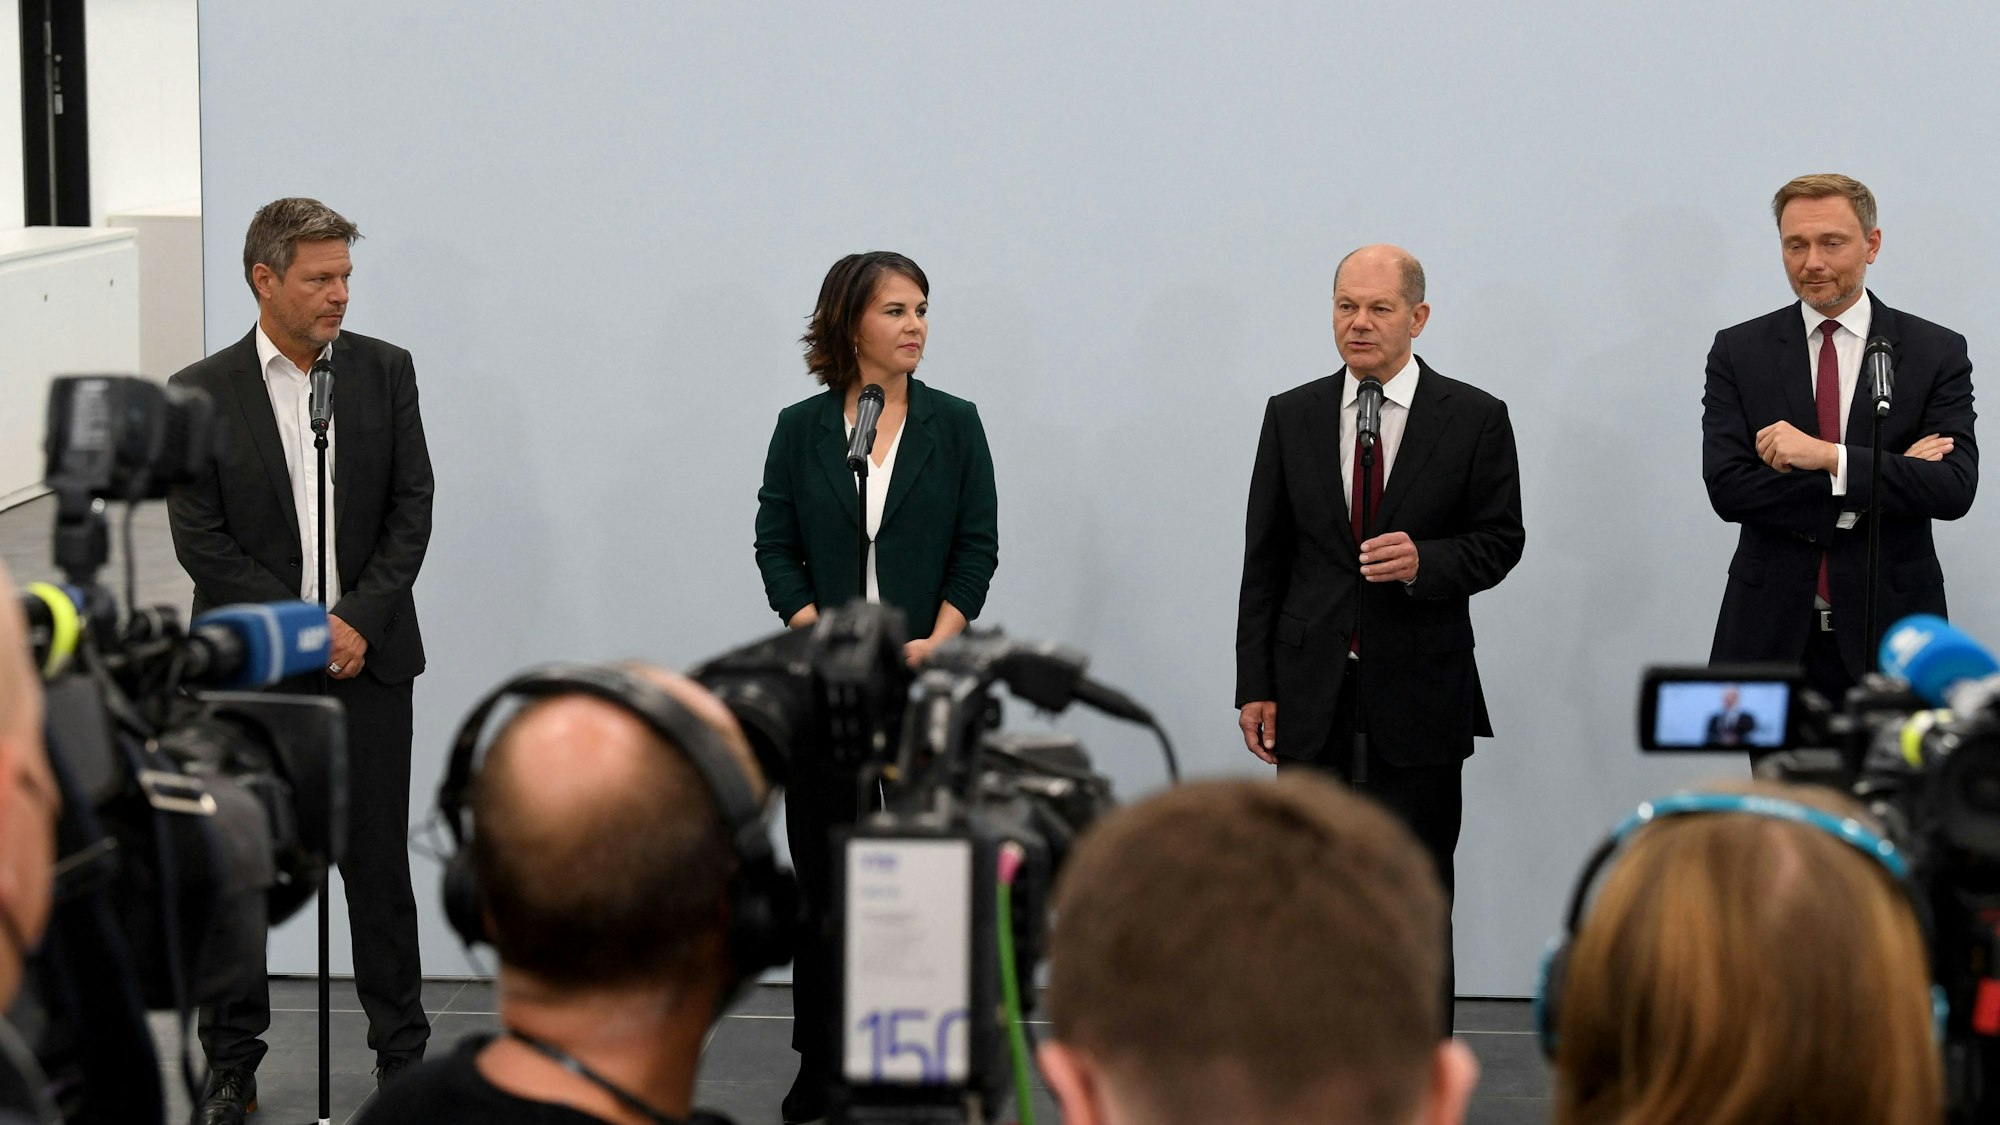 Das Foto (aufgenommen am 15. Oktober 2021 in Berlin) zeigt die ParteivorsitzendenAnnalena Baerbock, Olaf Scholz und Christian Lindner undRobert Habeck.